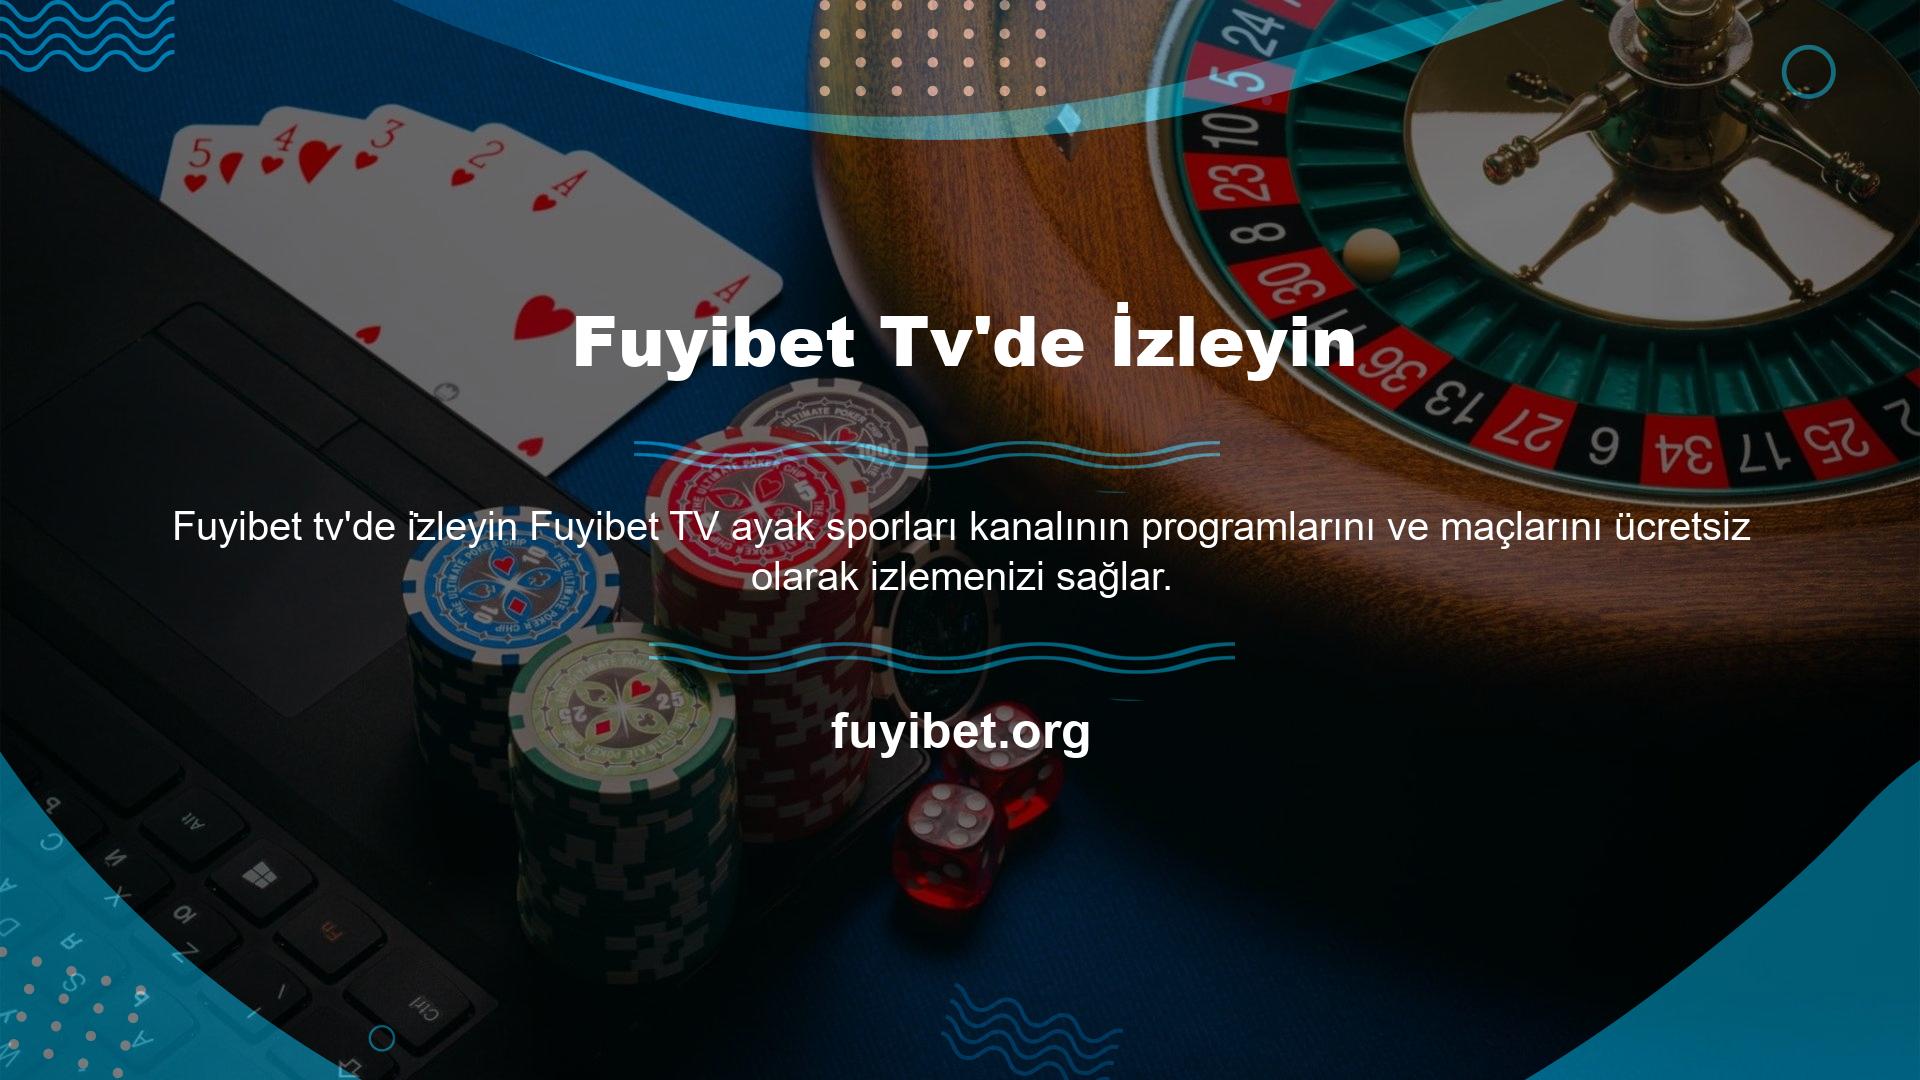 Ayrıca Fuyibet TV yayın maçlarını kesintisiz ve kesintisiz olarak HD kalitede izlemenizi sağlayan kaliteli altyapıyı da sizlere sunmaktadır